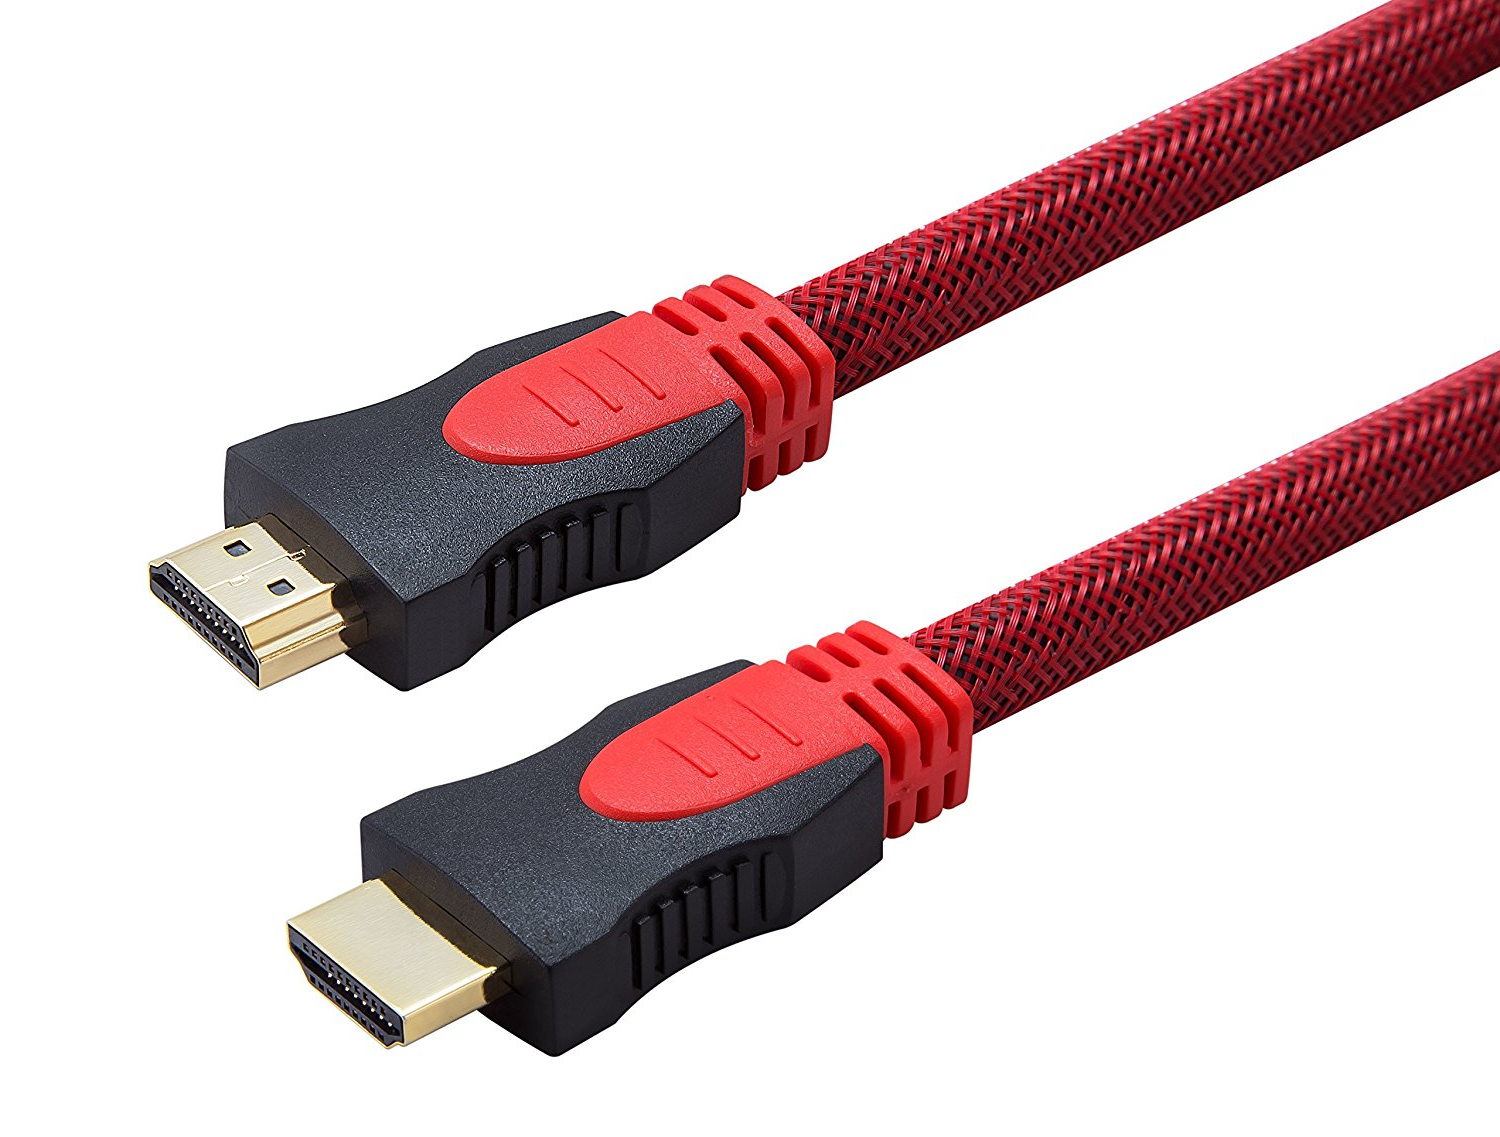 HDMI Cable - HDM014 Copper